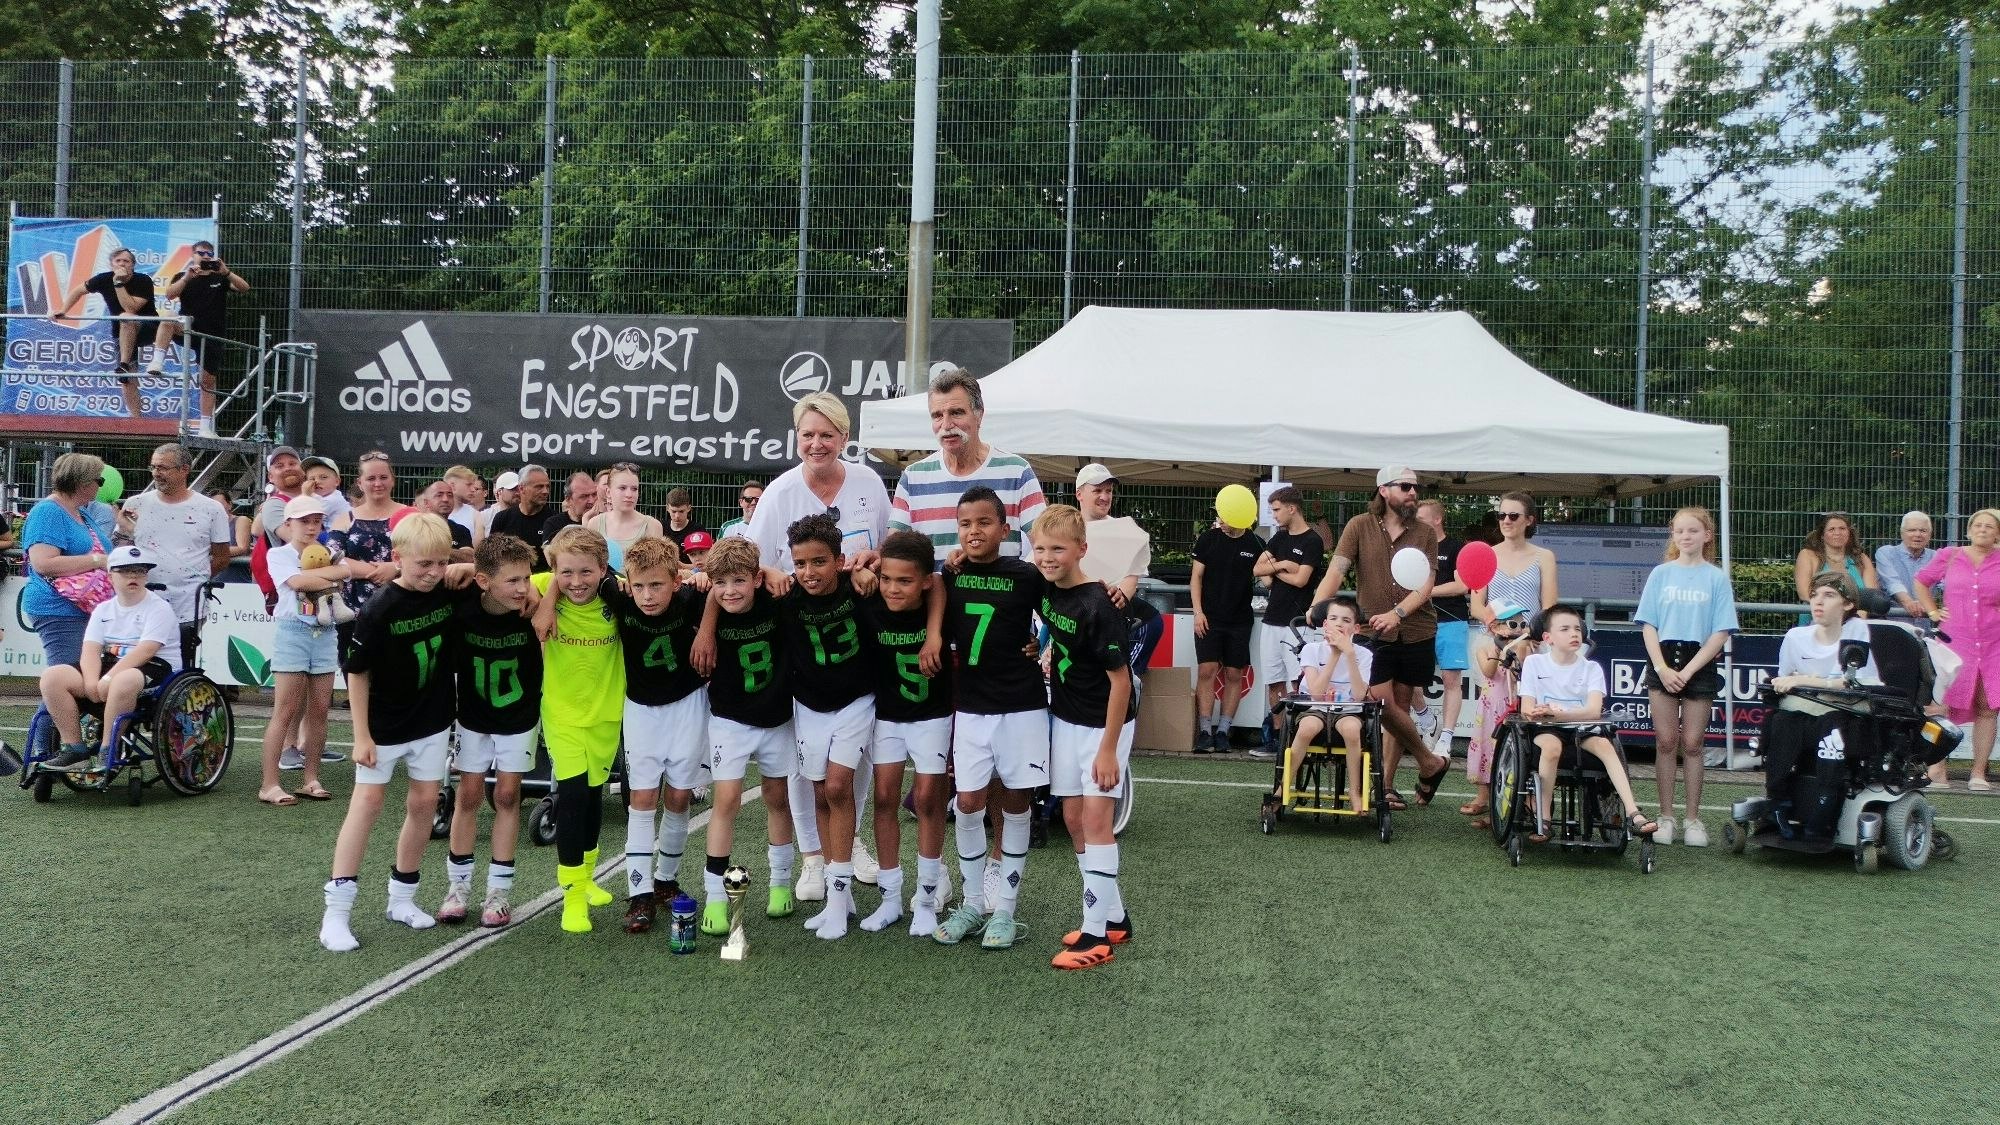 Eine Fußballmannschaft, bestehend aus Jungs, stehen in einer Reihe. Im Hintergrund ist Handballlegende Heiner Brand zu sehen.